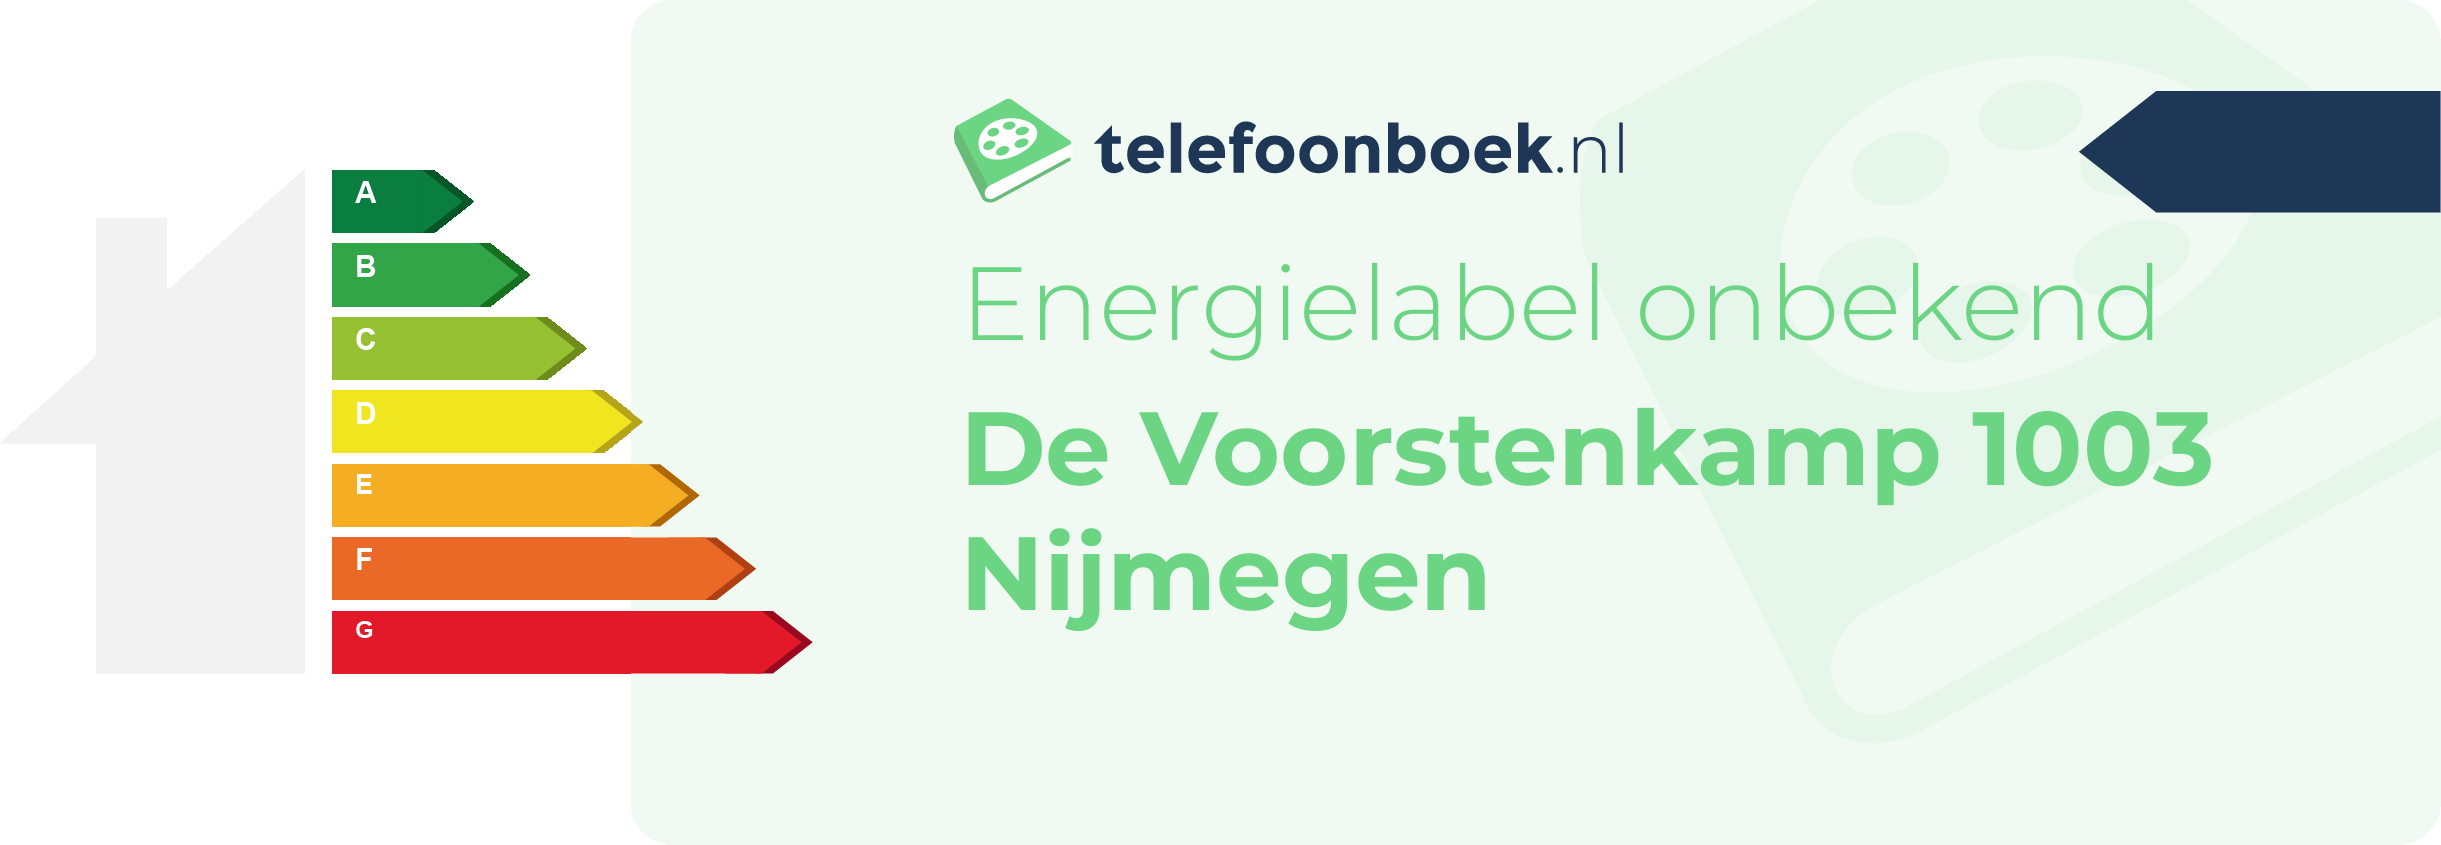 Energielabel De Voorstenkamp 1003 Nijmegen